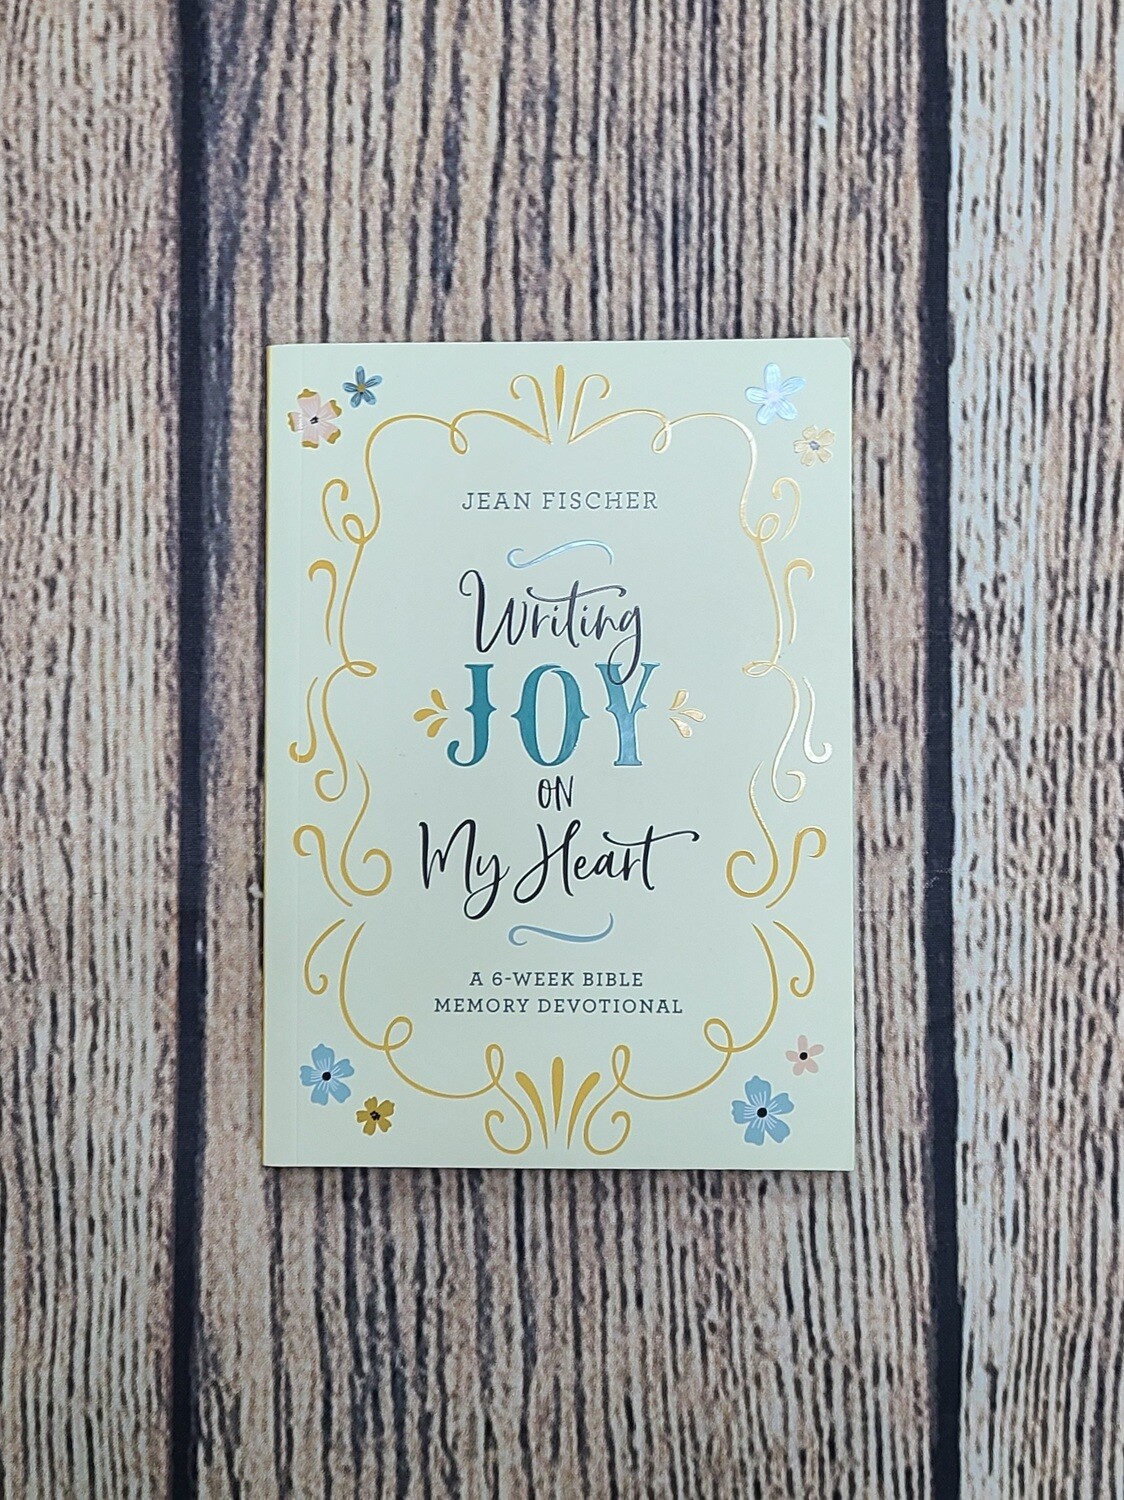 Writing Joy on my Heart: A 6-Week Bible Memory Devotional by Jean Fischer